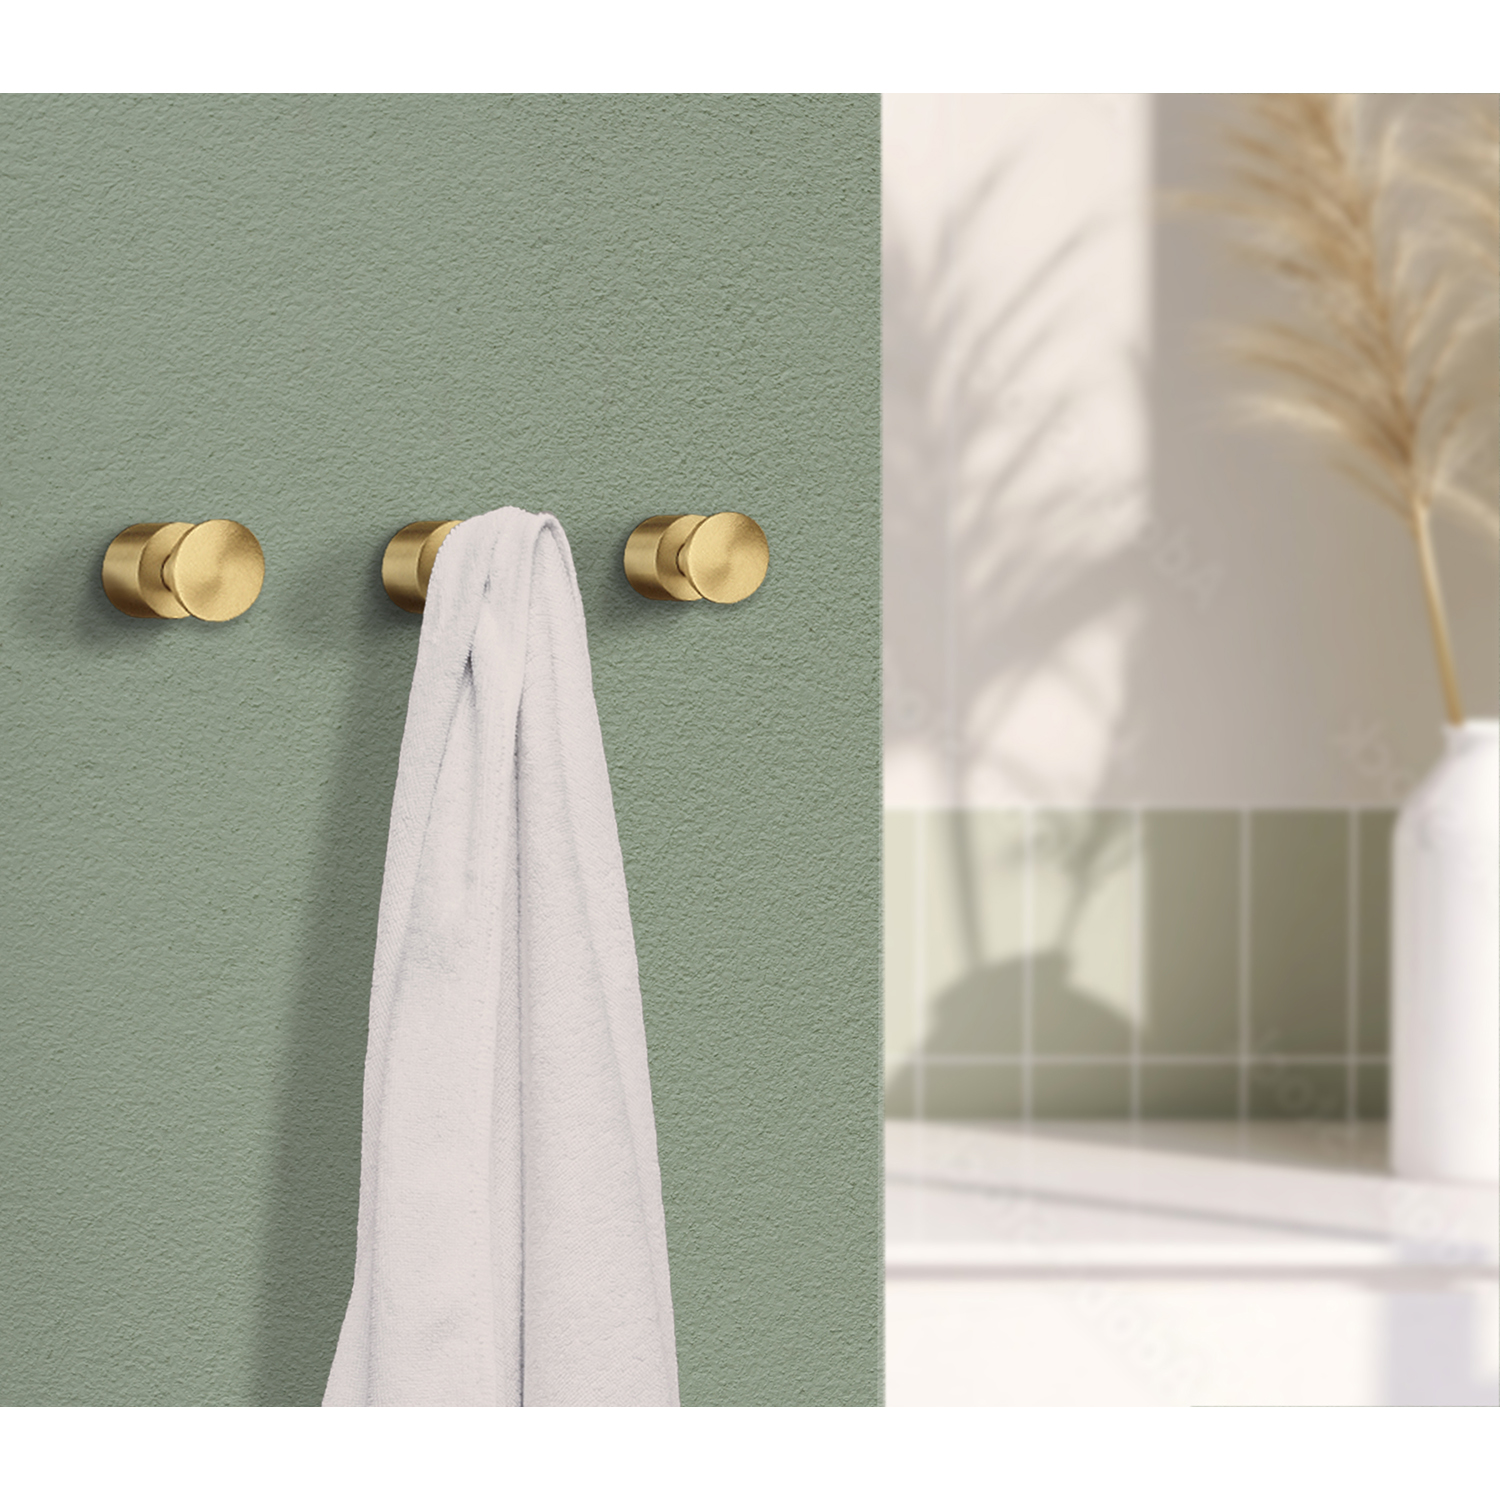 Smedbo Home Series Accesorios de baño Toallero doble de latón cepillado